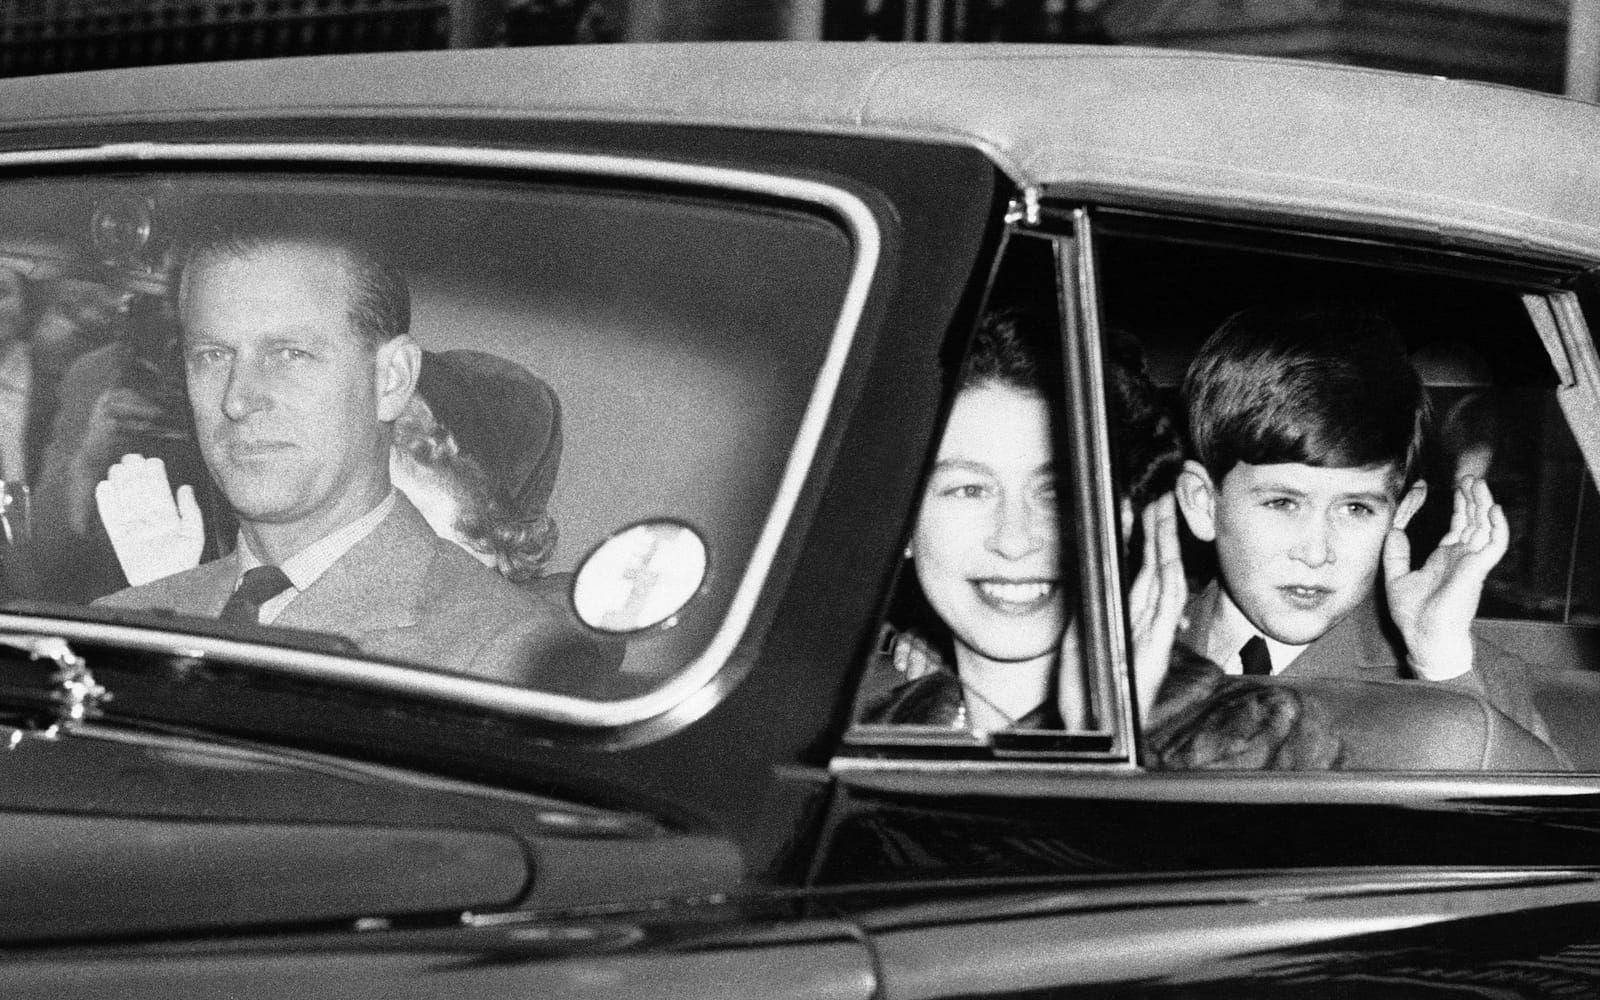 Är man kunglig blir man uppassad även när man ska göra det enklaste ärenden. Här ska familjen åka på picknick och får vinka för kamerorna i mars 1956. Prins Philip håller händerna på ratten när övriga familjen vinkar till dem som ser på.